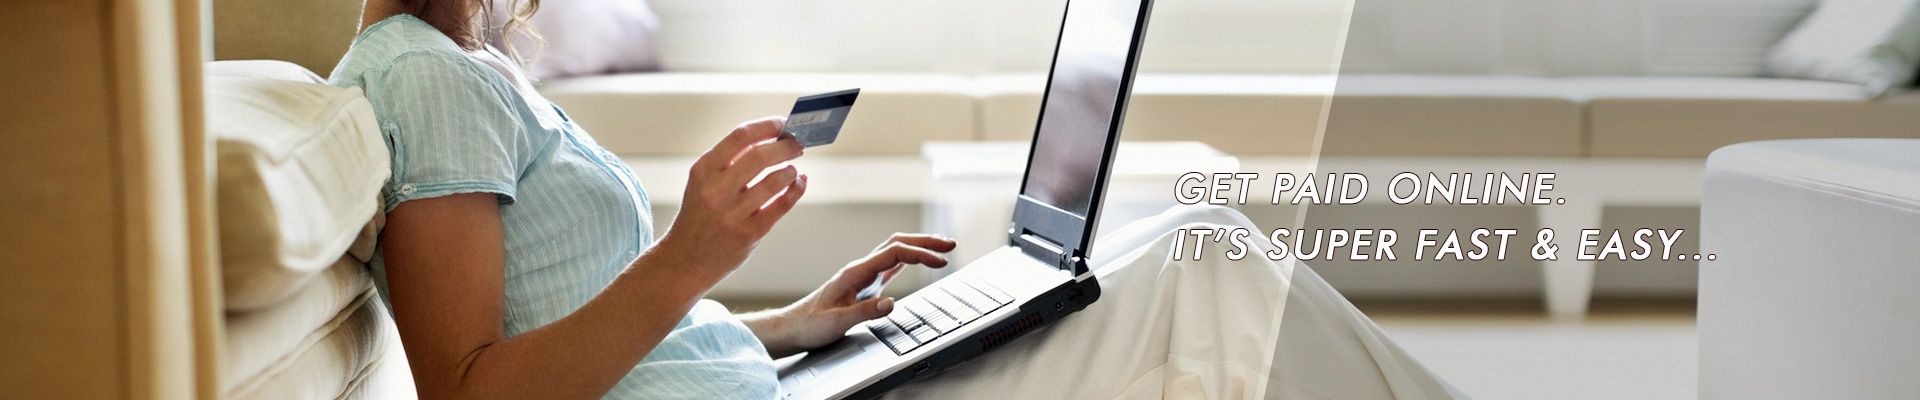 online-payment-website-screenshort